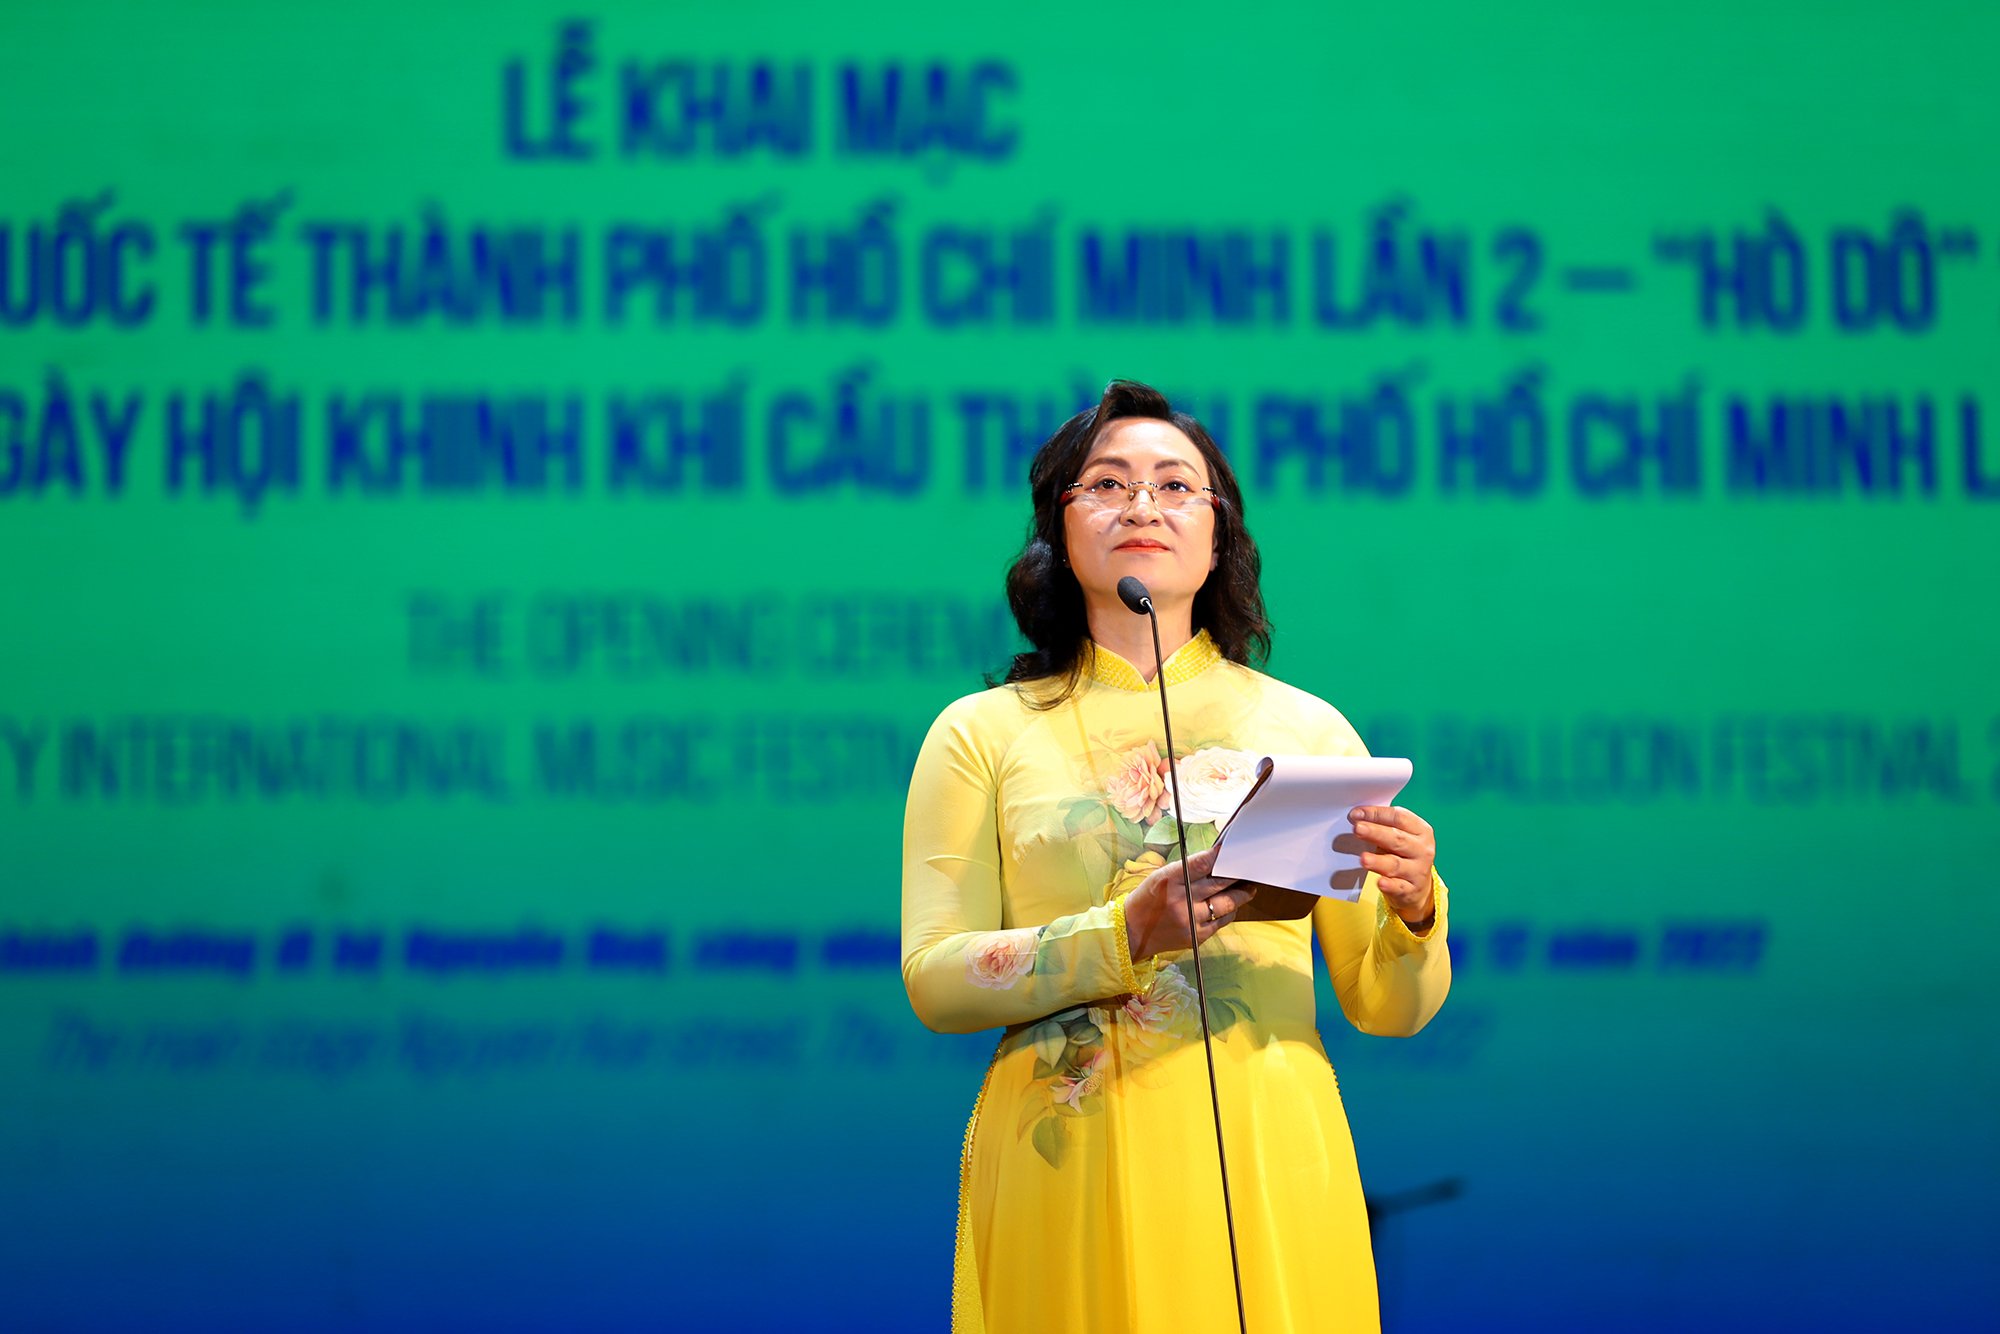 Bà Phan Thị Thắng – Phó Chủ tịch UBND TPHCM phát biểu: “Lễ hội là không gian đầy sôi động, hấp dẫn, tạo điều kiện cho khán giả tiếp cận được những phần trình diễn âm nhạc chất lượng, mang tầm vóc quốc tế, cũng như cơ hội tiếp xúc nhiều thể loại âm nhạc trên thế giới với thông điệp “Mang thế giới và Việt Nam đến gần nhau hơn”. Với mục tiêu phát triển ngành công nghiệp âm nhạc thành ngành du lịch văn hoá trọng điểm trong chiến lược phát triển các ngành công nghiệp văn hoá ở TPHCM đến năm 2030, TPHCM tạo điều kiện thuận lợi cho hoạt động sáng tạo, xây dựng môi trường kinh doanh lành mạnh, chú trọng các hoạt động giao lưu quốc tế, góp phần xây dựng và phát triển thương hiệu đặc trưng của TPHCM”.